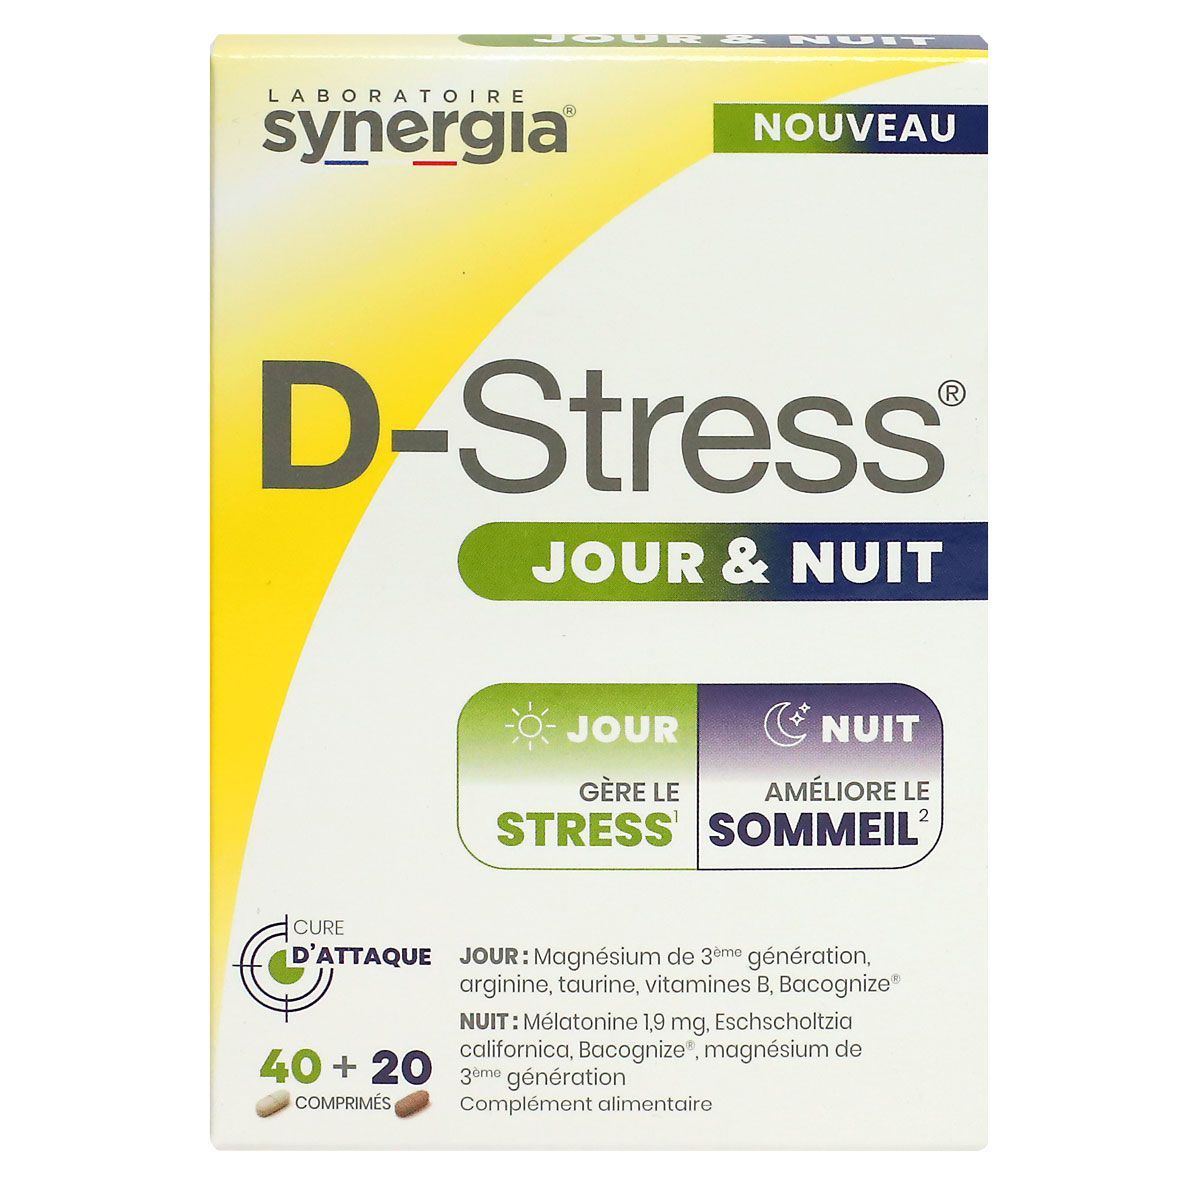 D-Stress sommeil 40 comprimés Synergia